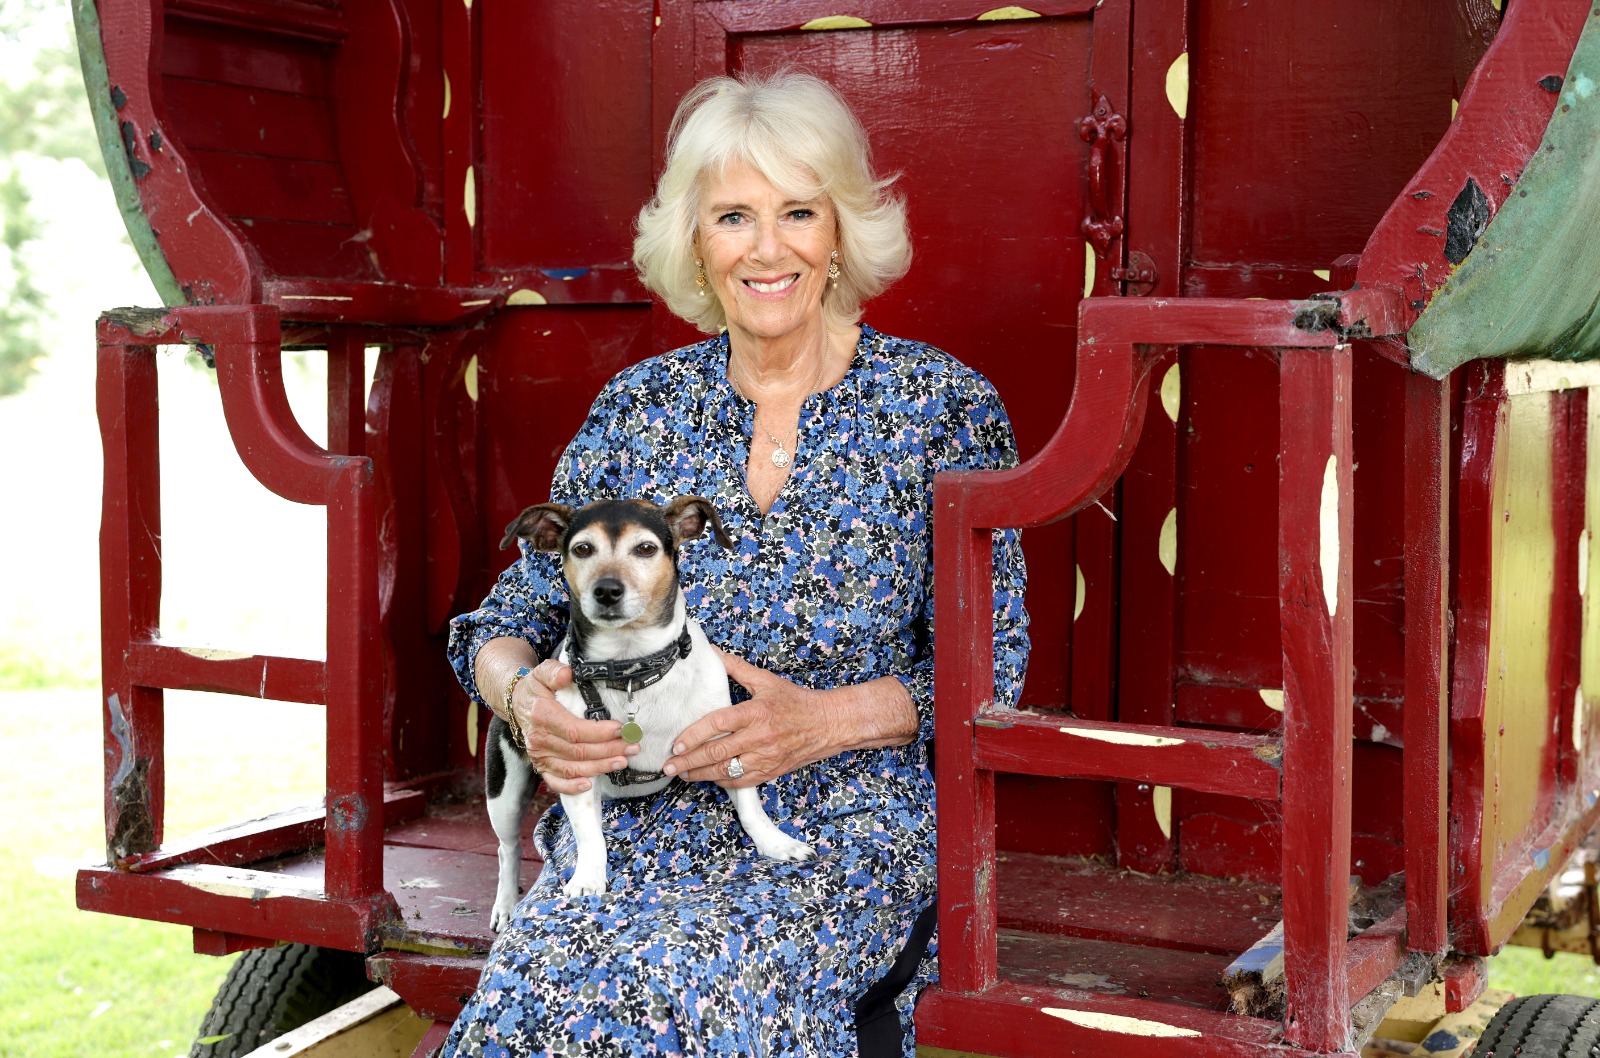 Las imágenes, tomadas por Chris Jackson, y compartidas por la cuenta oficial de Twitter del Palacio de Buckingham, @Royalfamily, vieron a Camilla con su linda perra de rescate Beth sentada en los escalones de una caravana vintage.